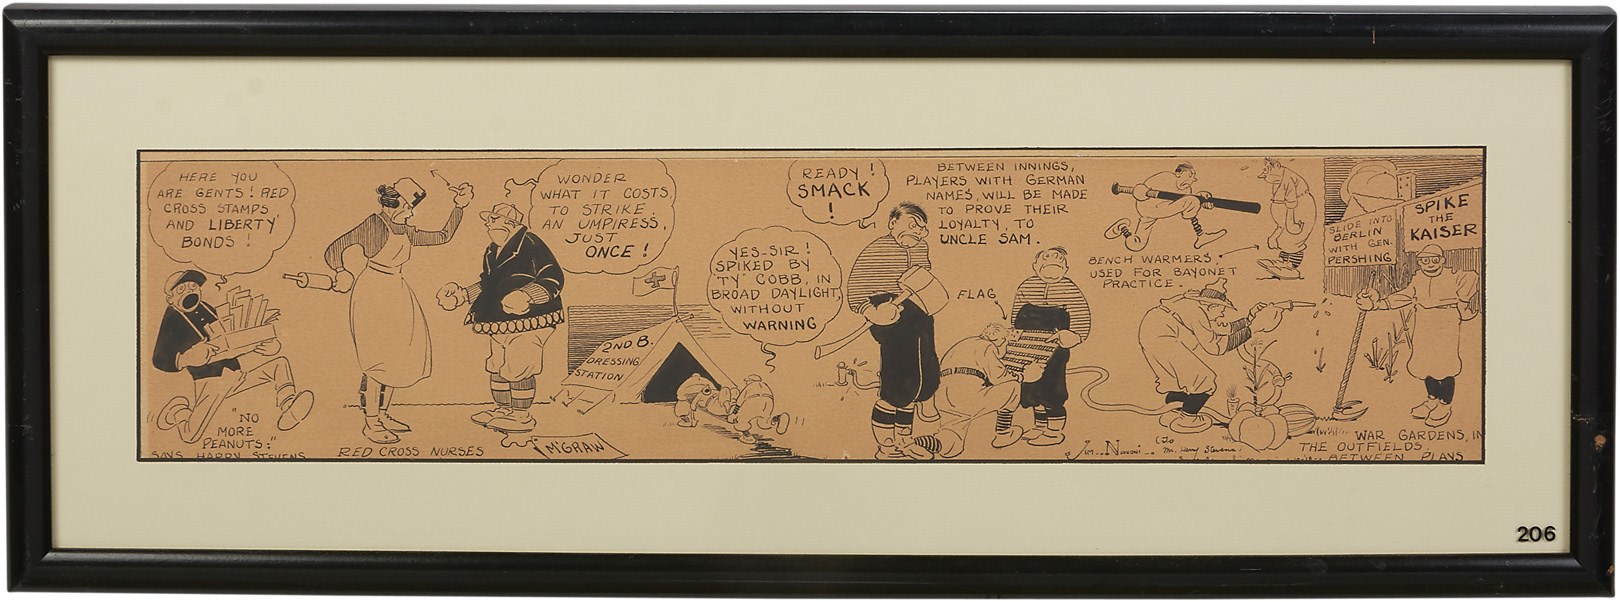 Baseball Autographs - 1910s Baseball & Presidential Comic Art Presented to Harry M. Stevens - from the Harry M. Stevens Auction (5)